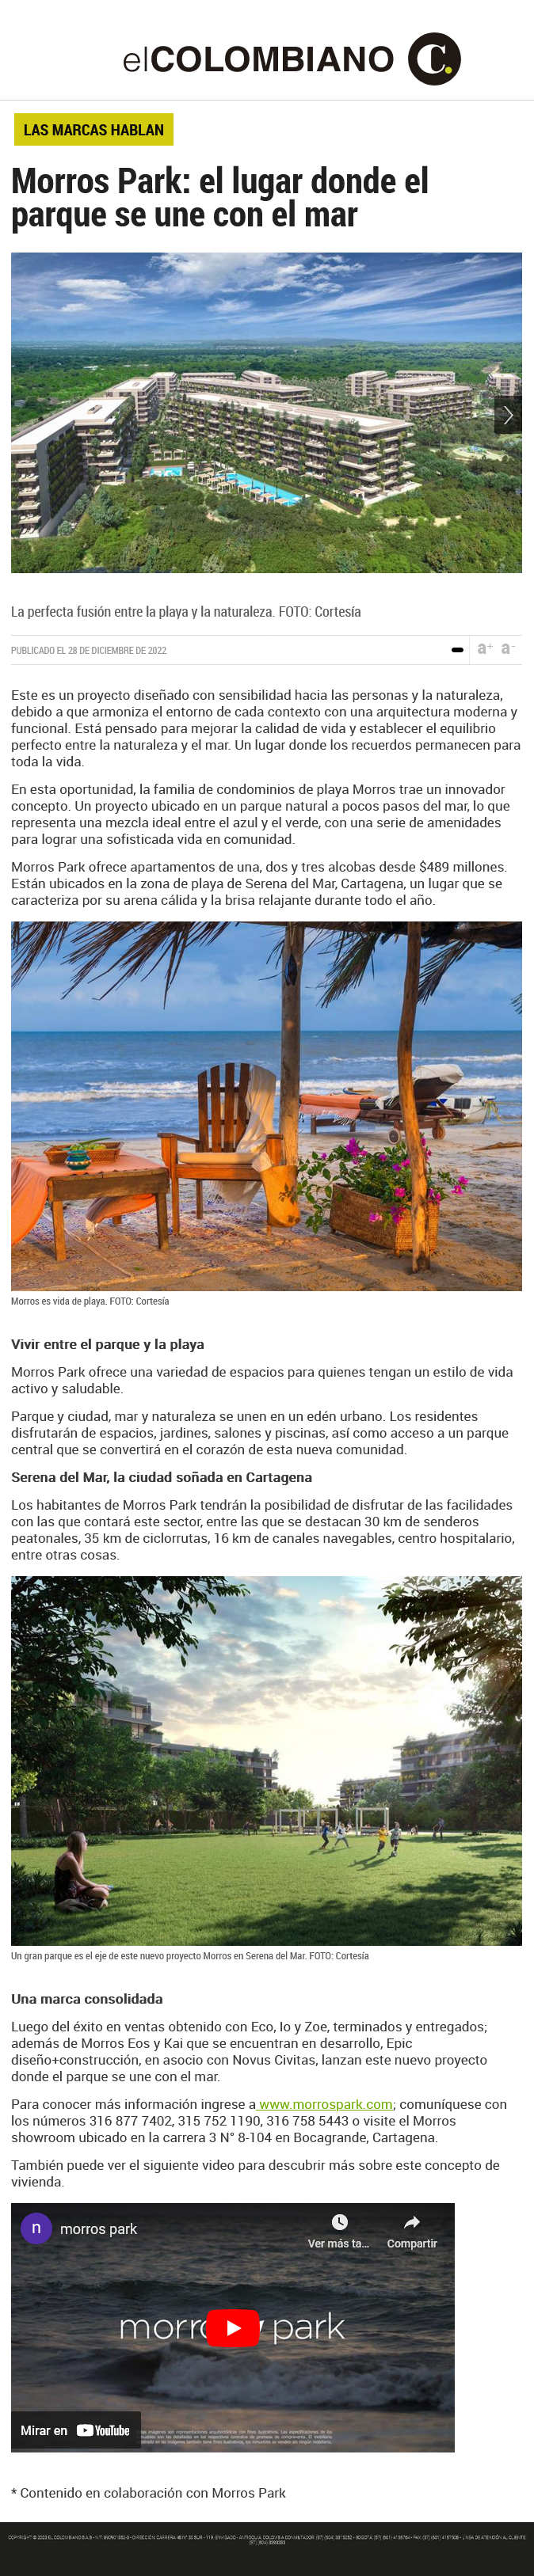 morros park: el lugar donde el parque se une con el mar